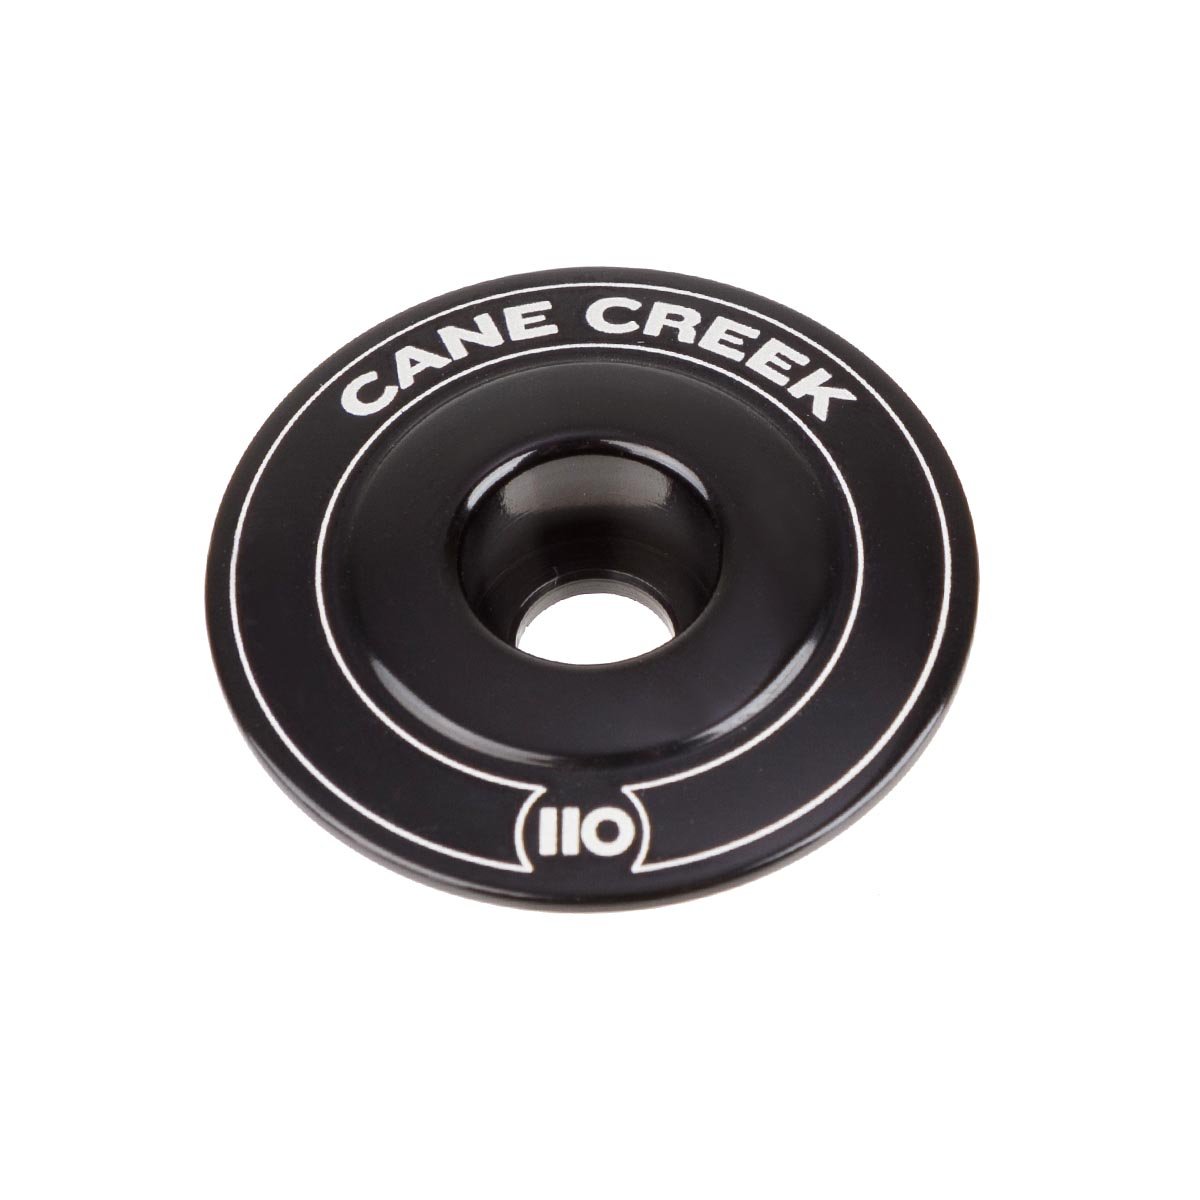 Cane Creek Tappo Serie Sterzo 110 Nero, Alluminio, 1 1/8 Pollici